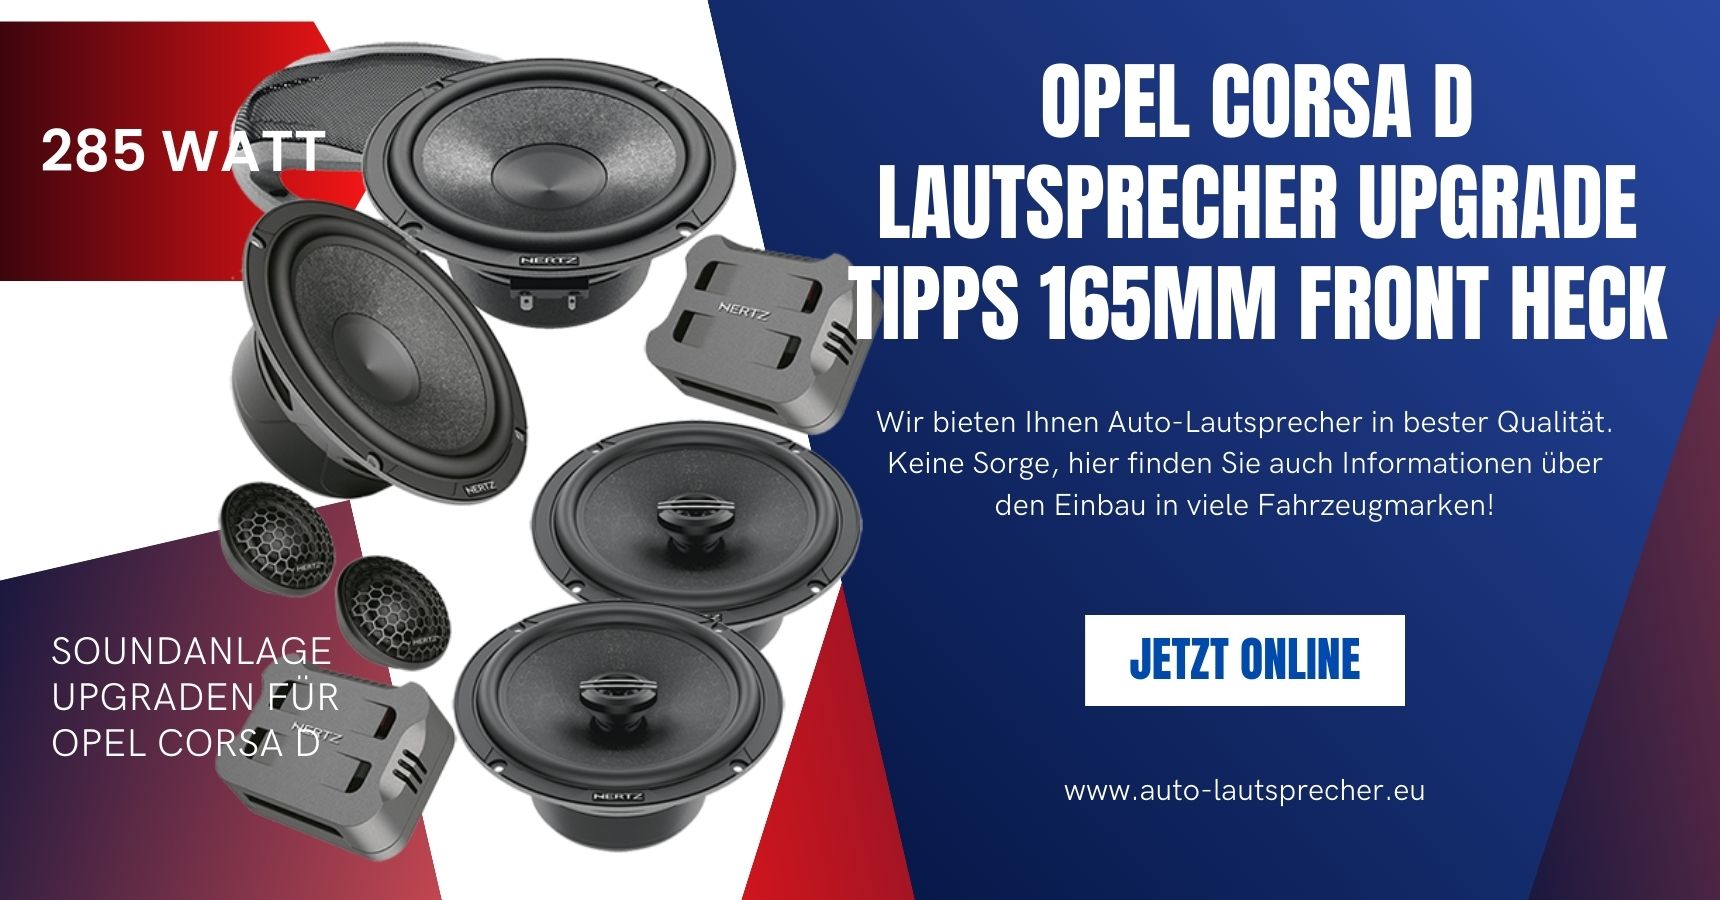 Opel Corsa D Lautsprecher Upgrade Tipps 165mm Front Heck